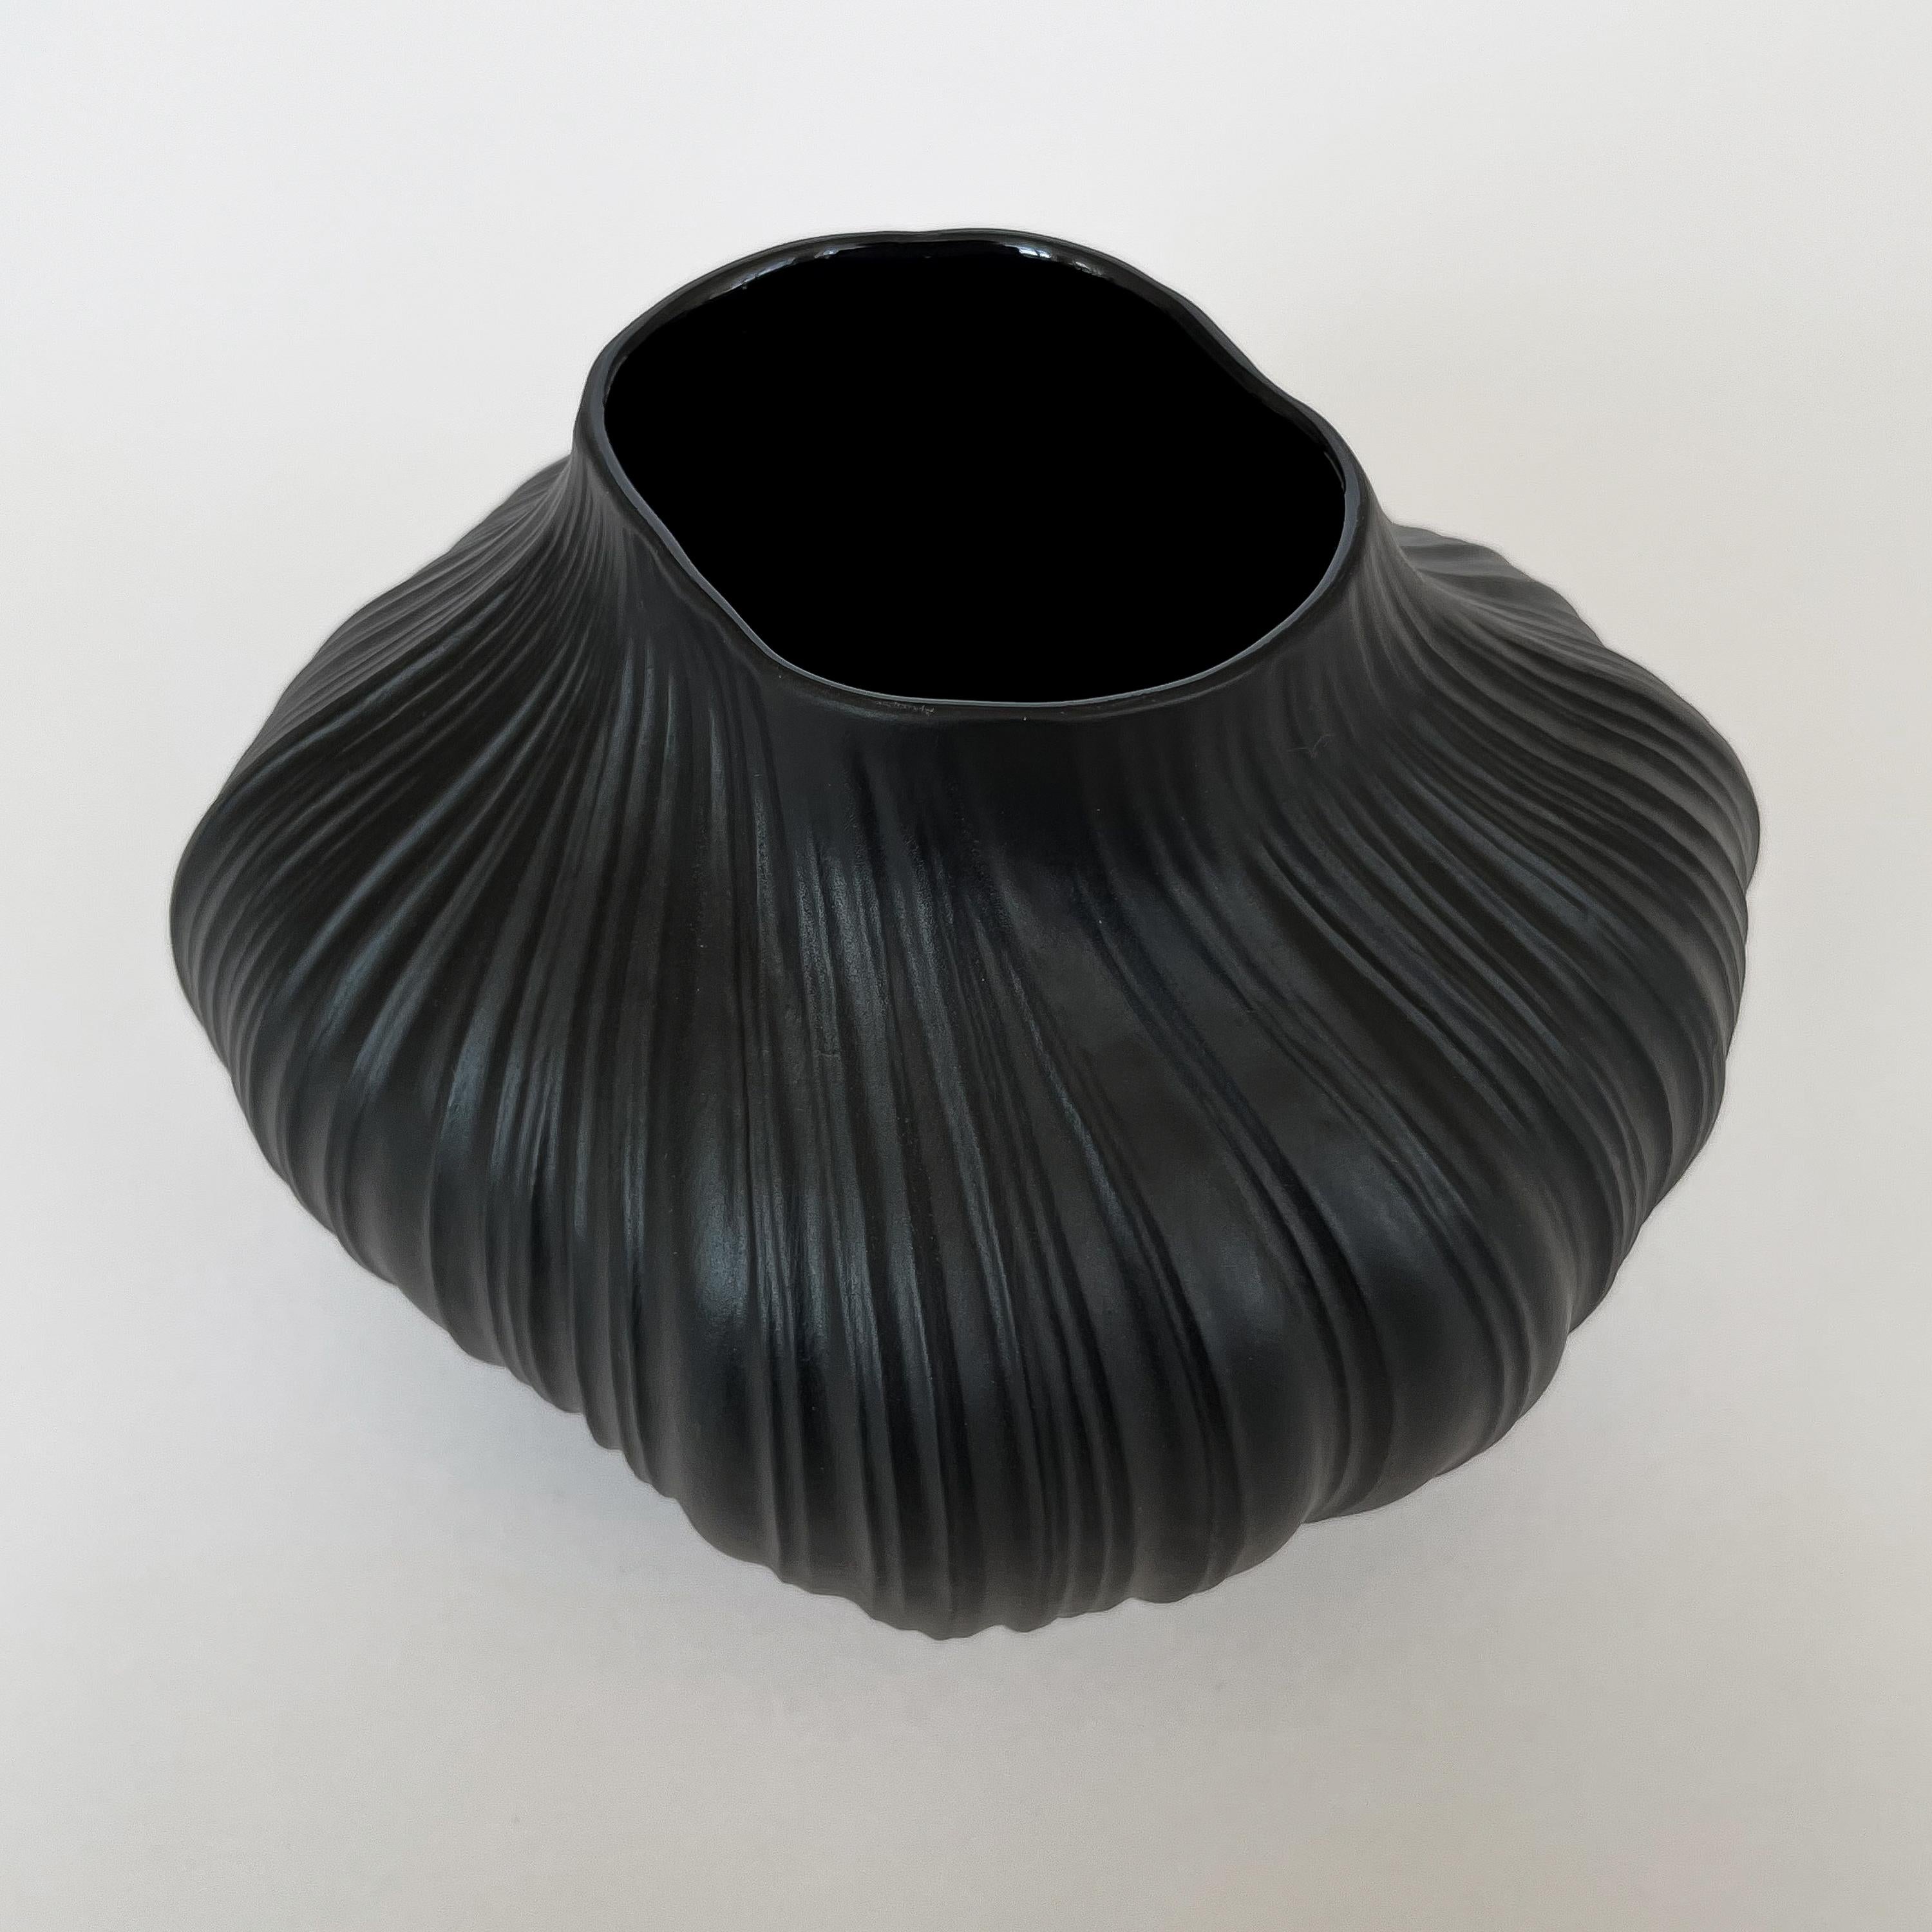 Mid-20th Century Martin Freyer Black Unglazed Porcelain Plissee Vase for Rosenthal